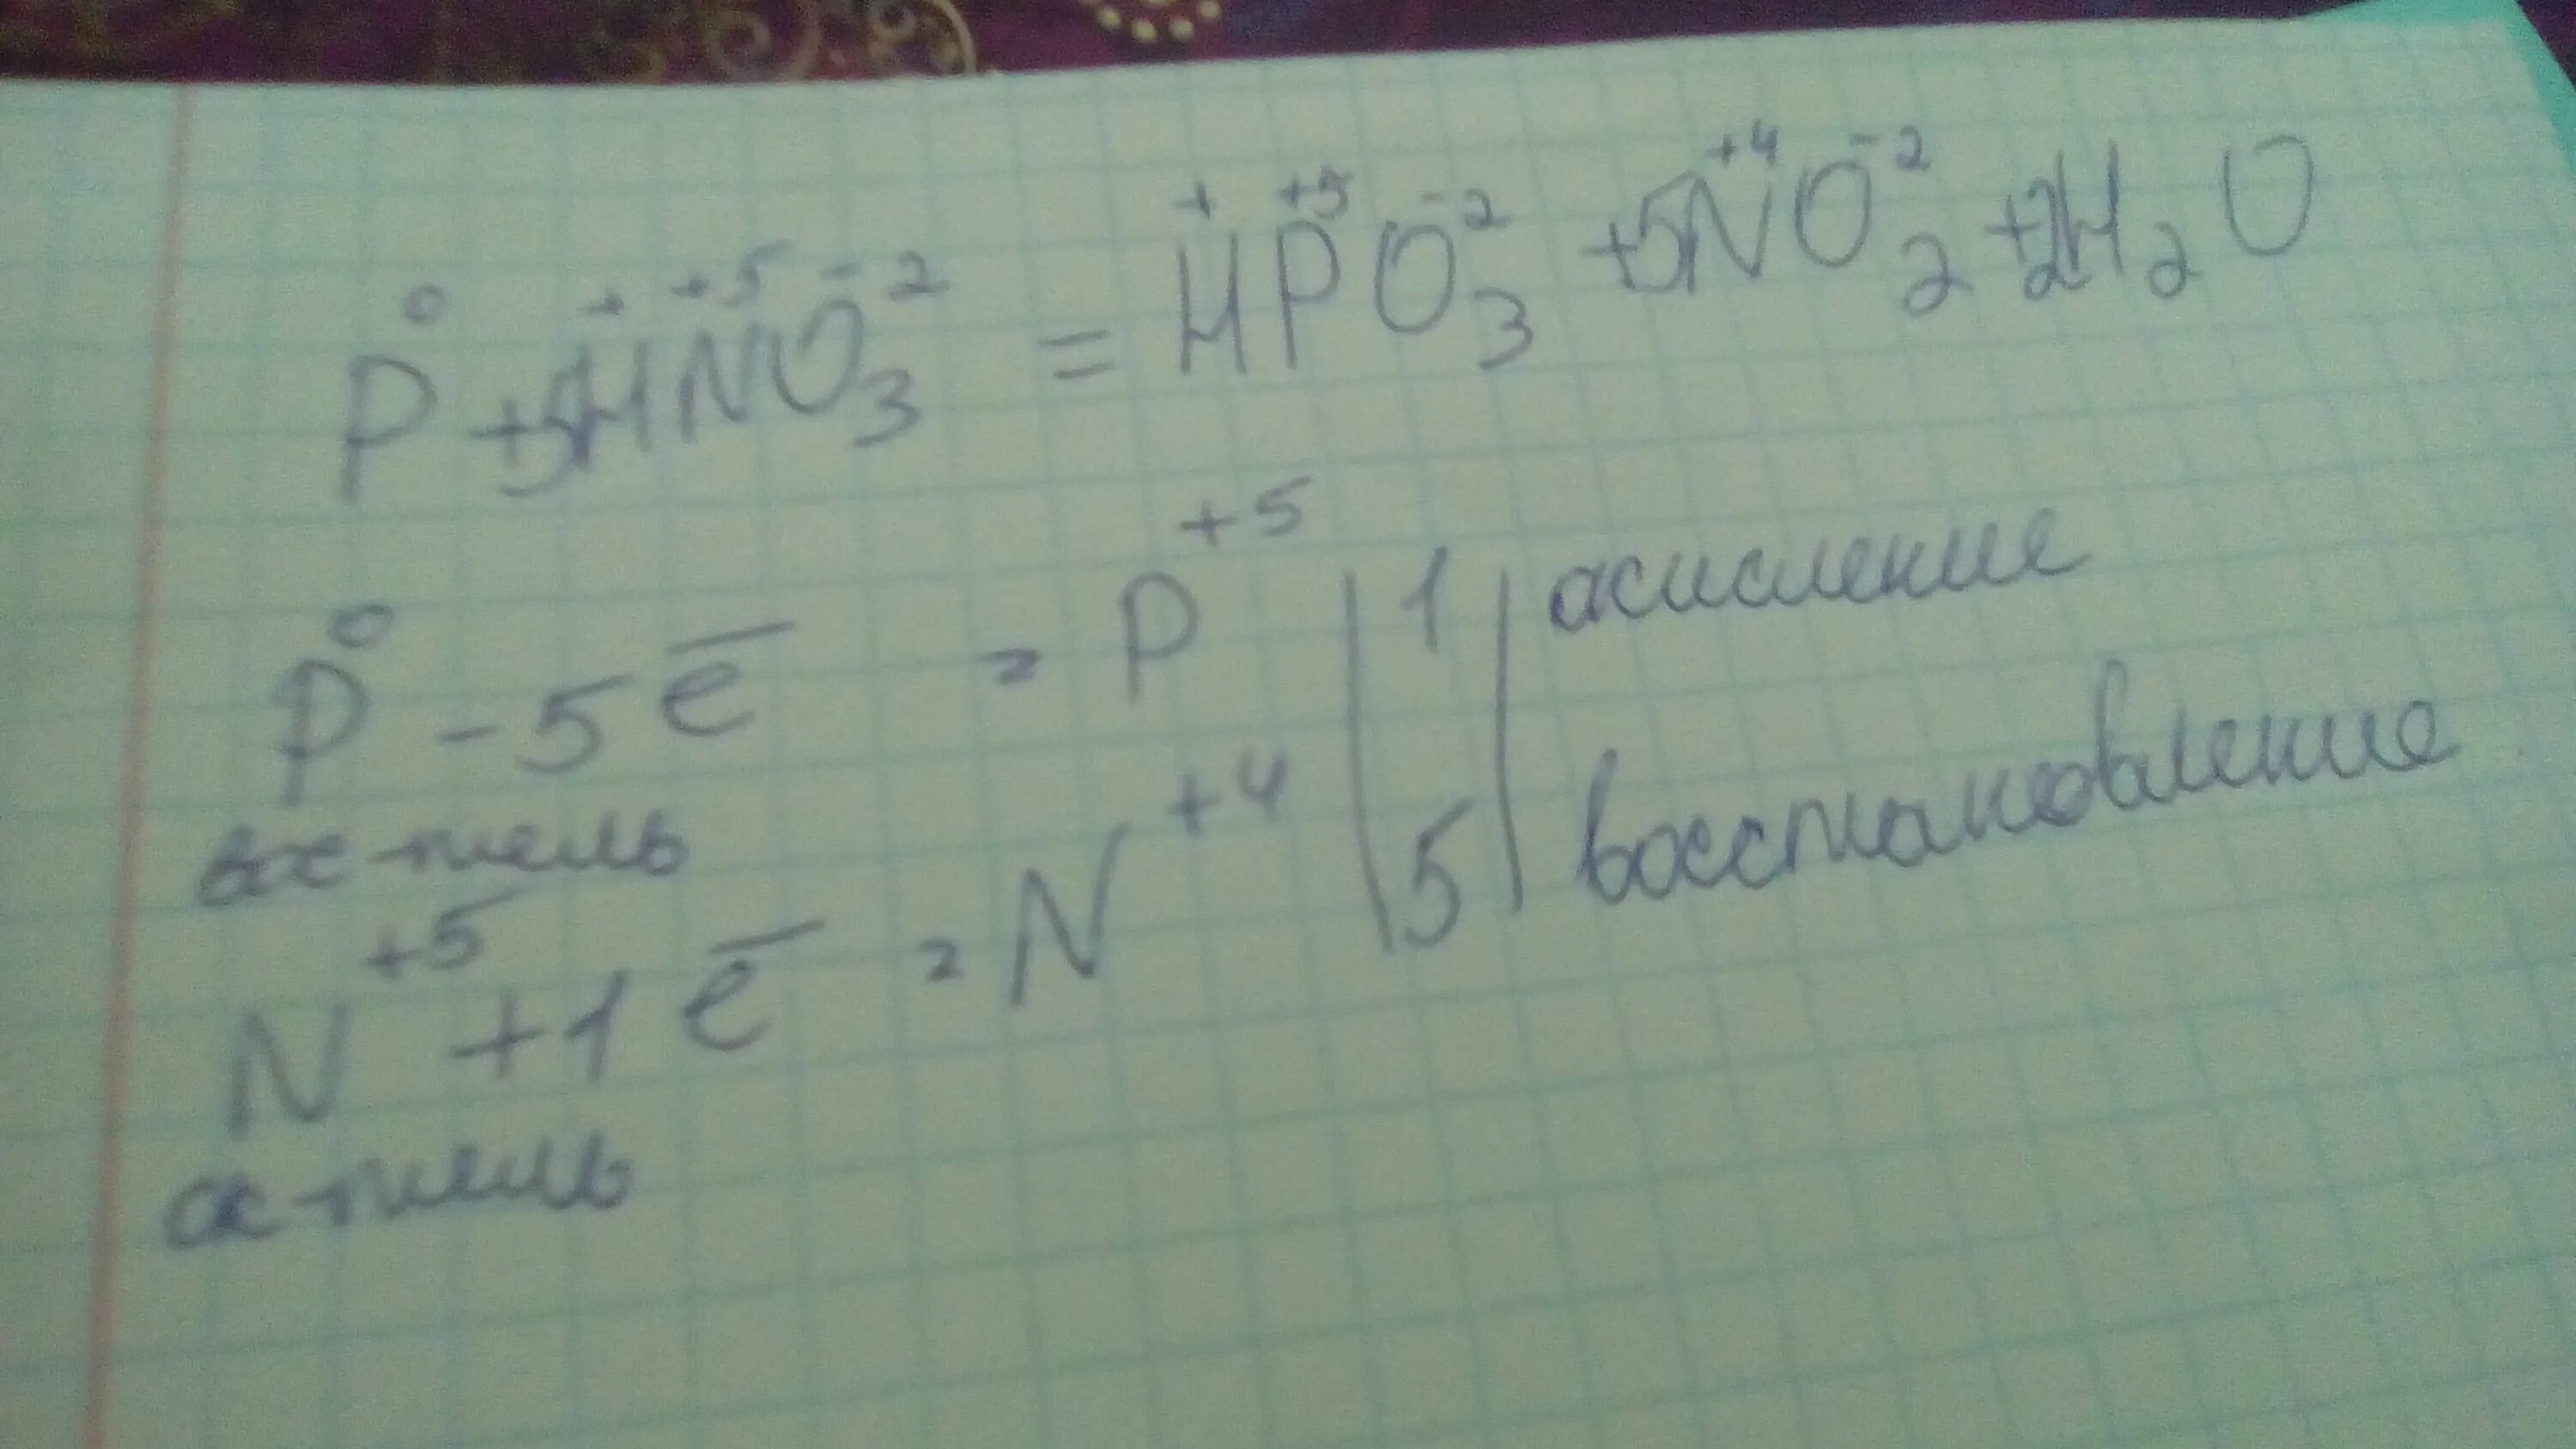 Hpo3 h2o. Метод электронного баланса p+hno3+h2o. P+hno3+h2o окислительно восстановительная реакция. Баланс p+hno3 h3po4+no2+h2o. P hno3 h2o электронный баланс.